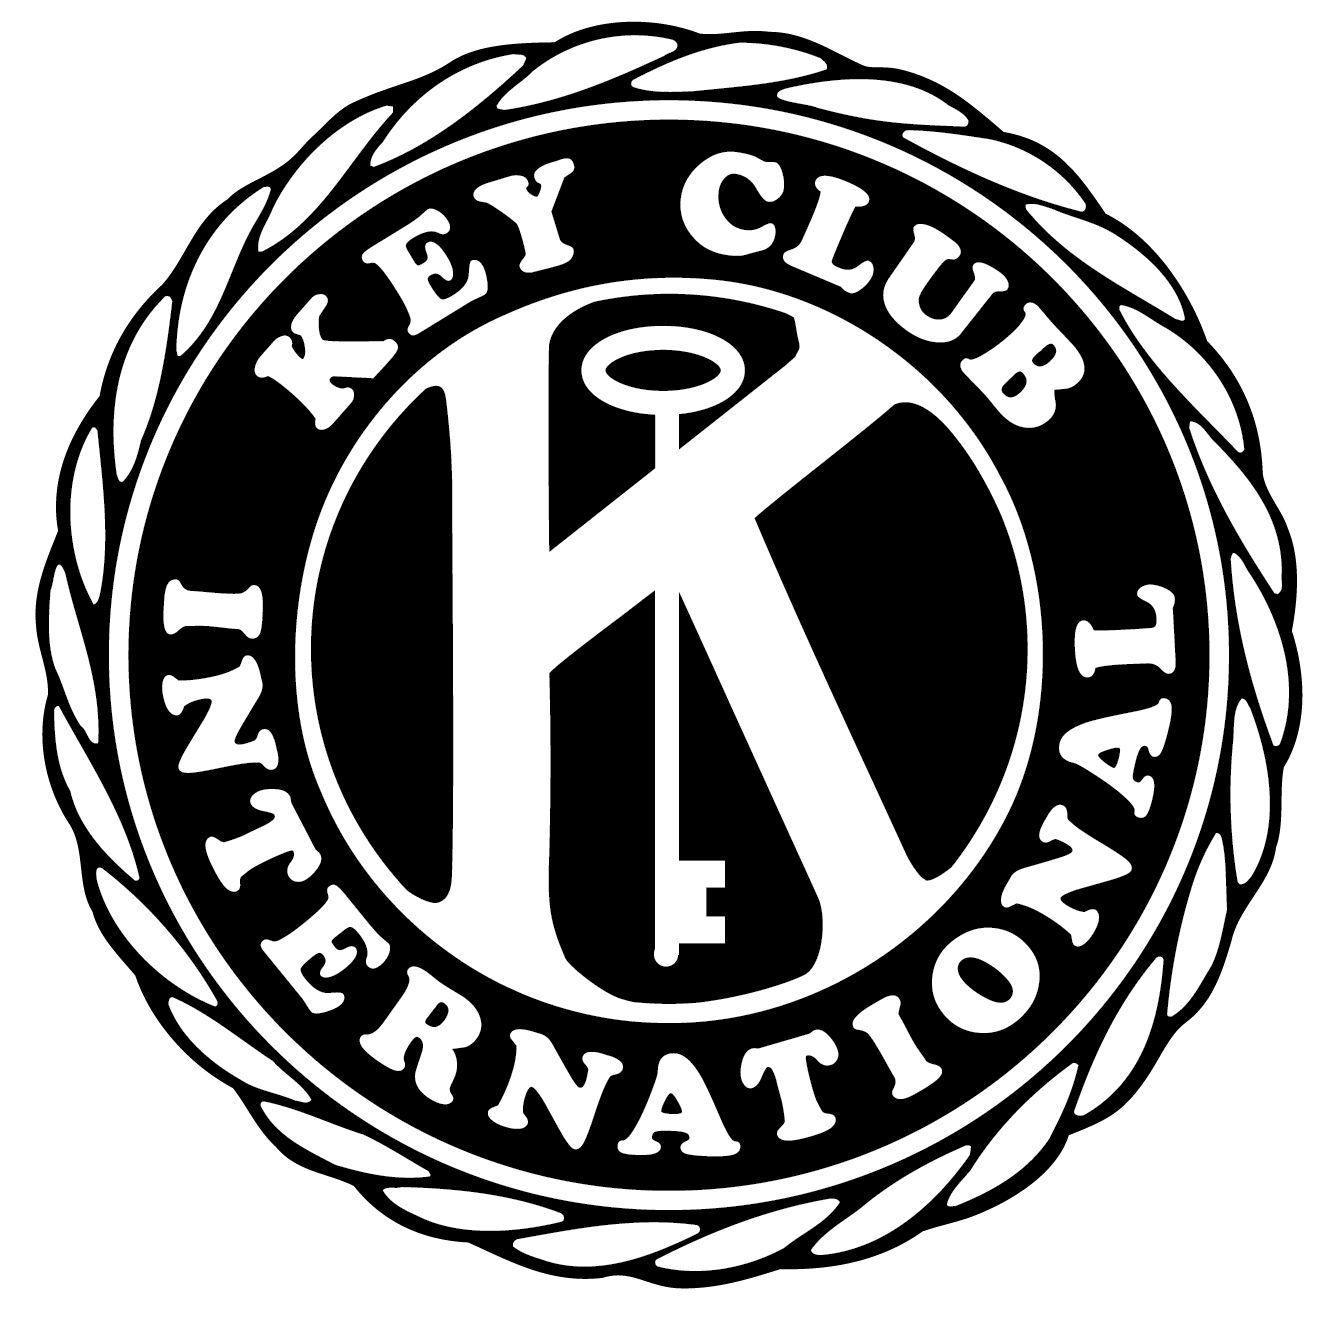 Seal Black and White Logo - Key Club seal - black - Key Club